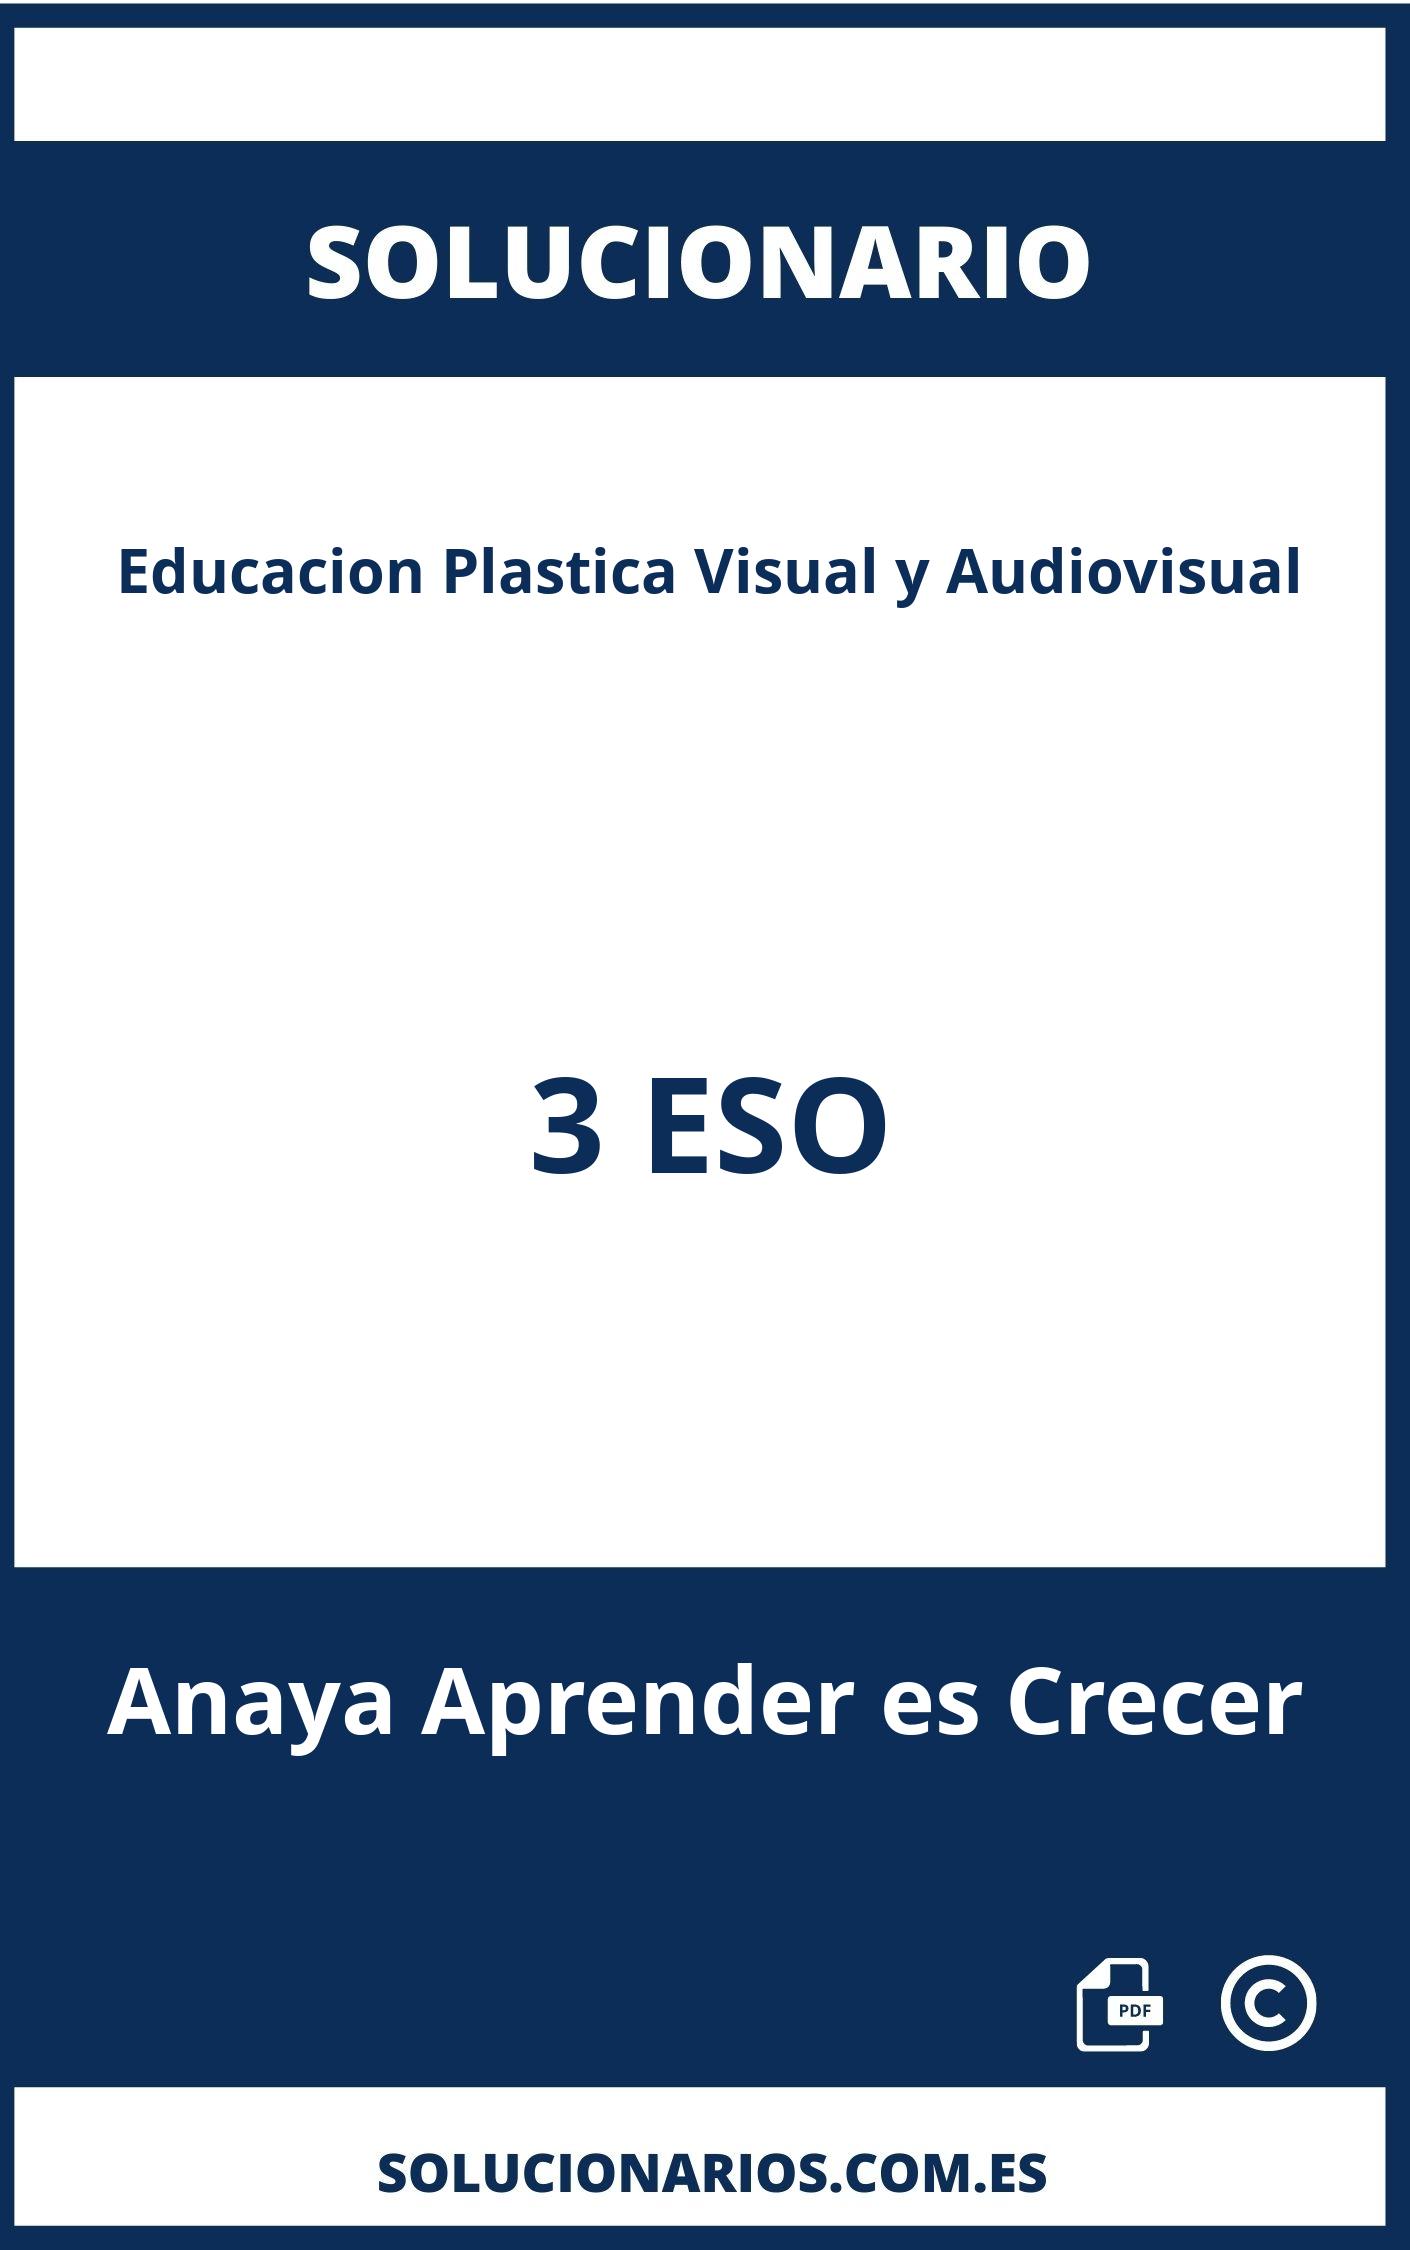 Solucionario Educacion Plastica Visual y Audiovisual 3 ESO Anaya Aprender es Crecer